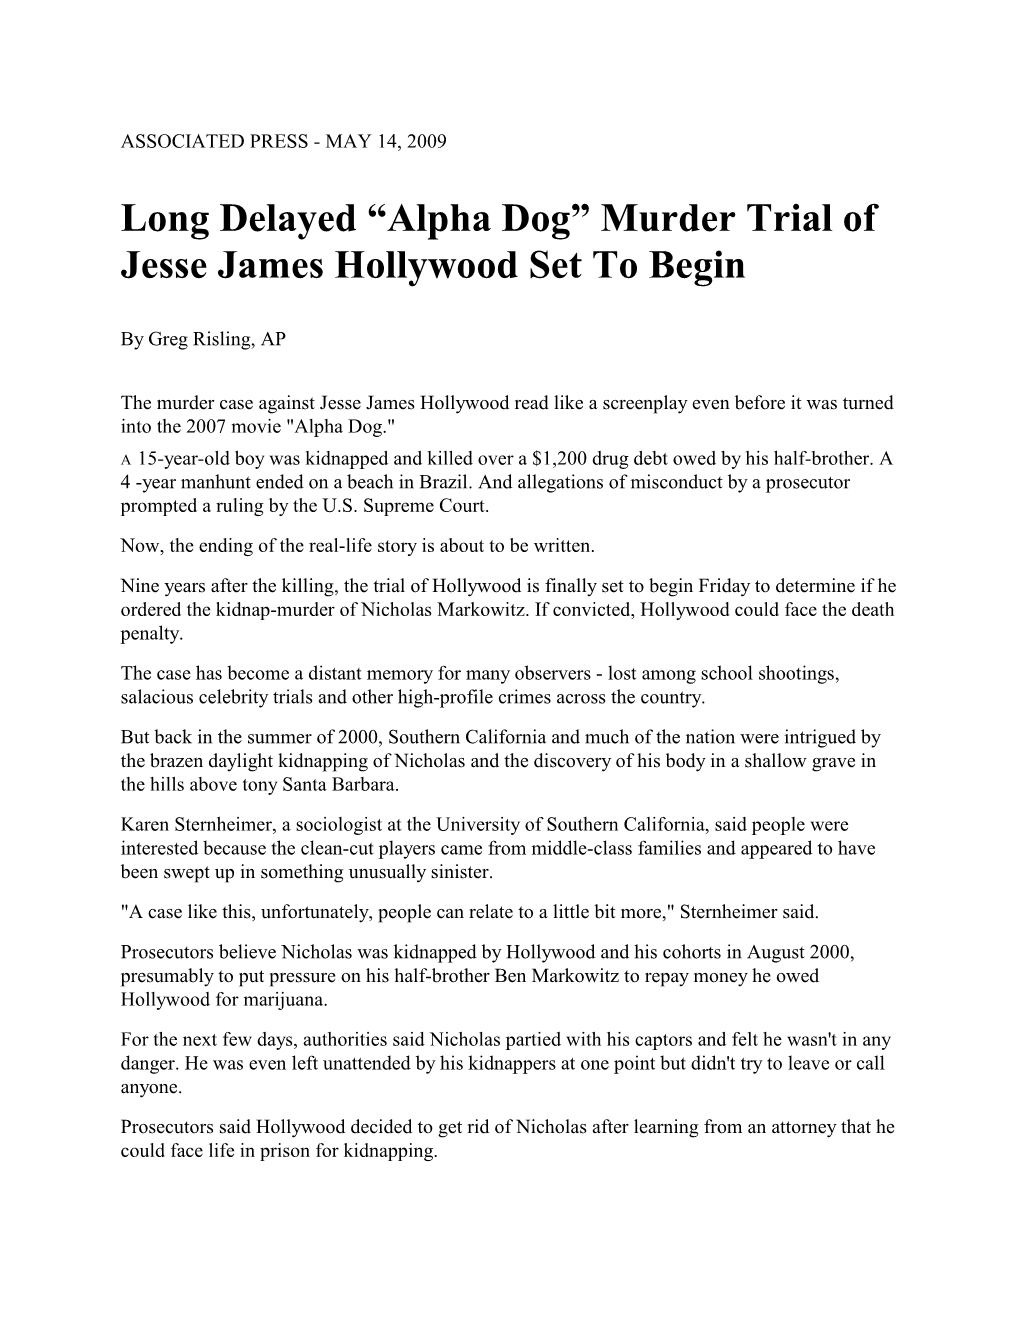 Long Delayed “Alpha Dog” Murder Trial of Jesse James Hollywood Set to Begin